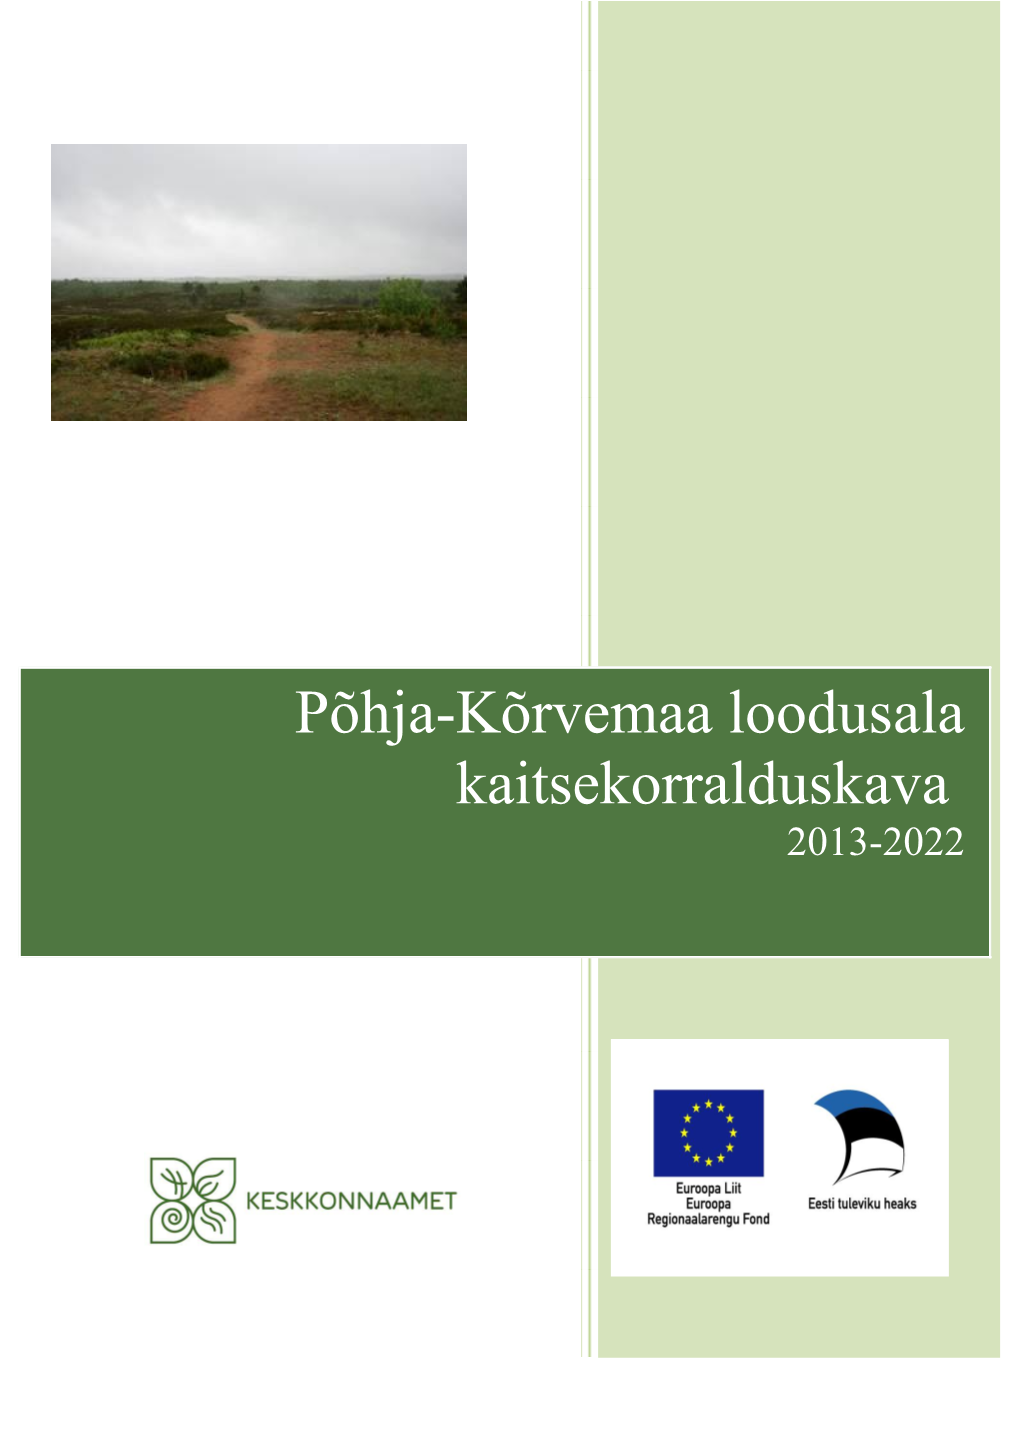 Põhja-Kõrvemaa Loodusala Kaitsekorralduskava 2013-2022 Sisukord 1